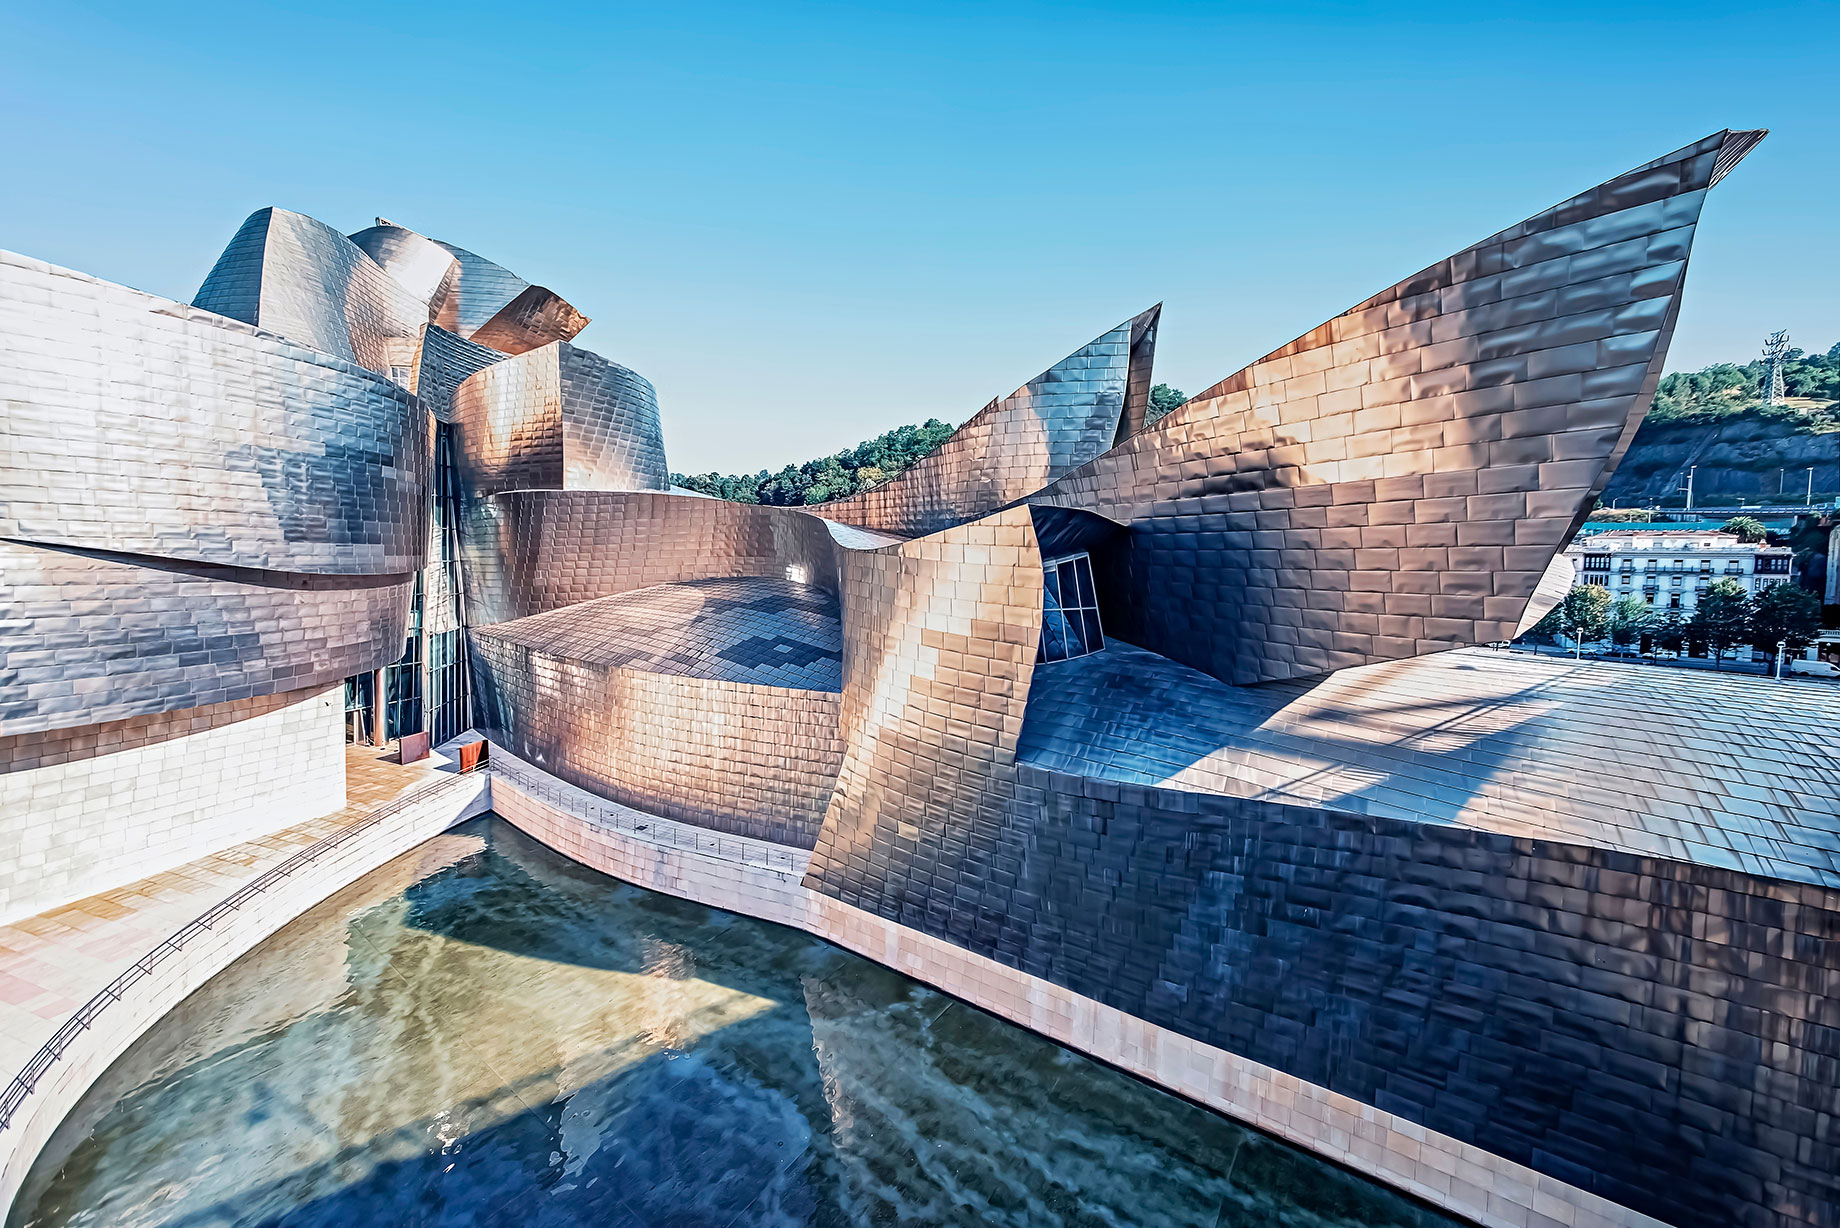 Guggenheim Museum Bilbao - Abando, Bilbao, Spain